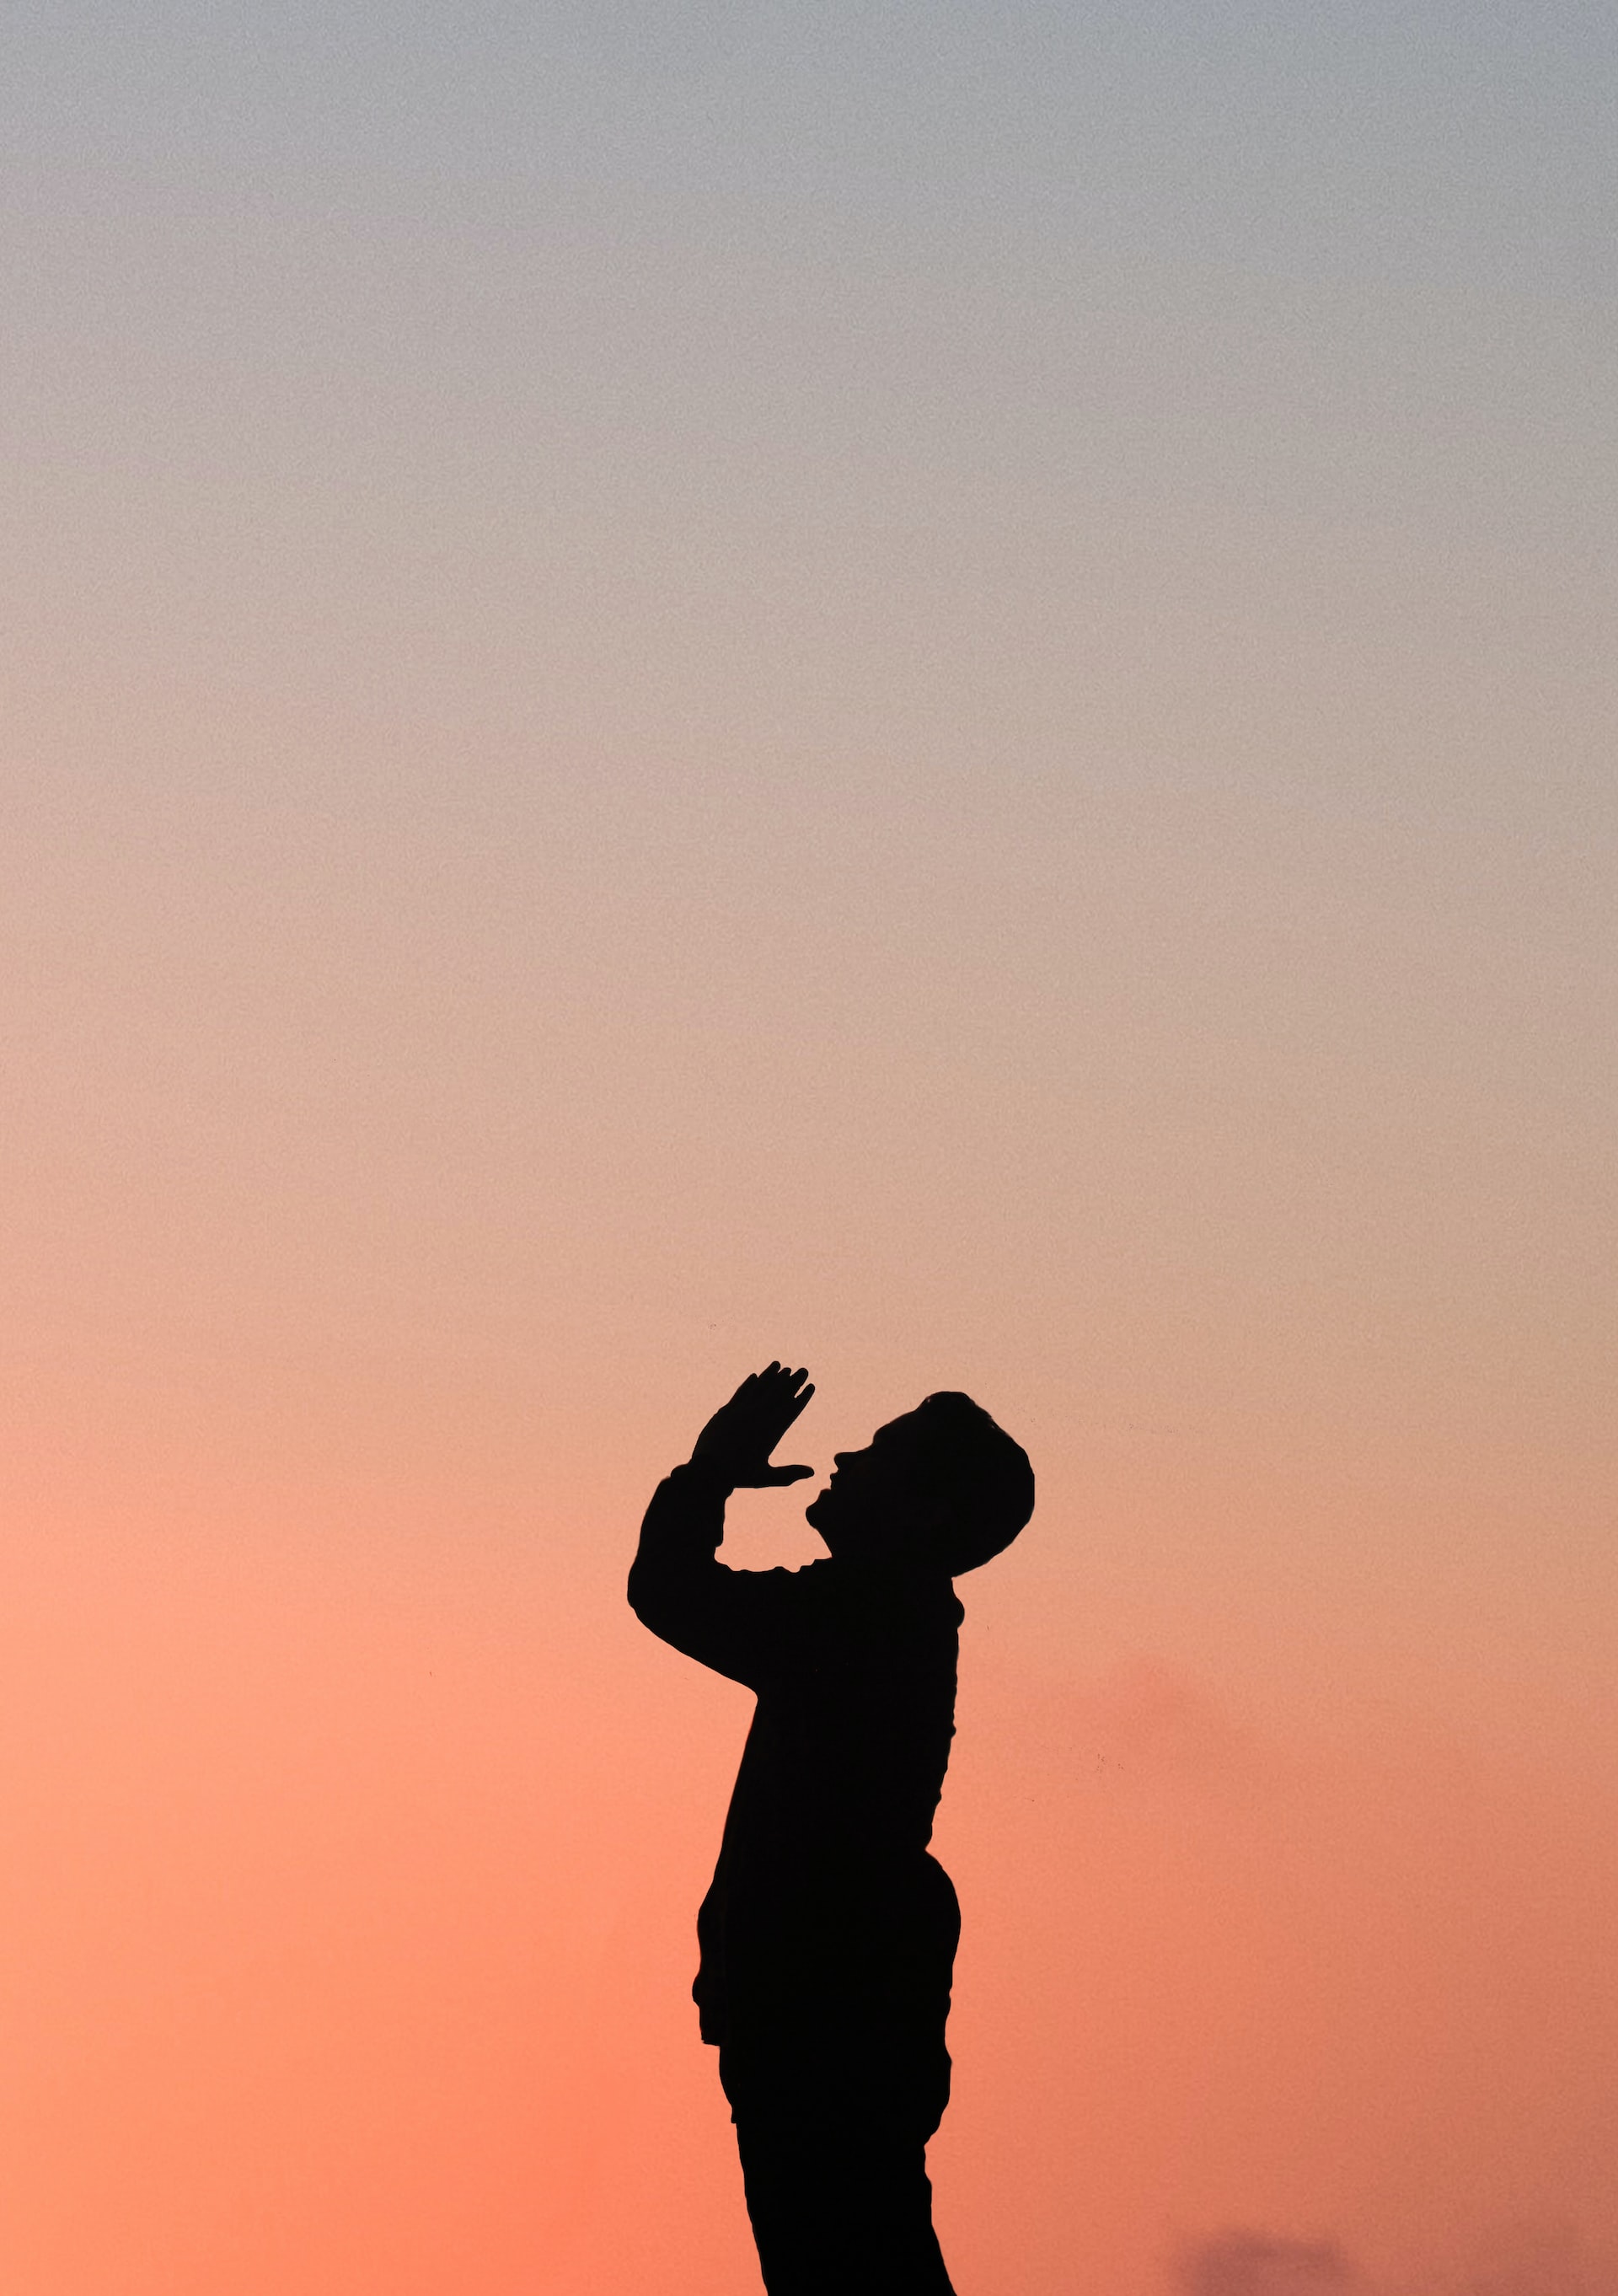 Man praying during a sunset